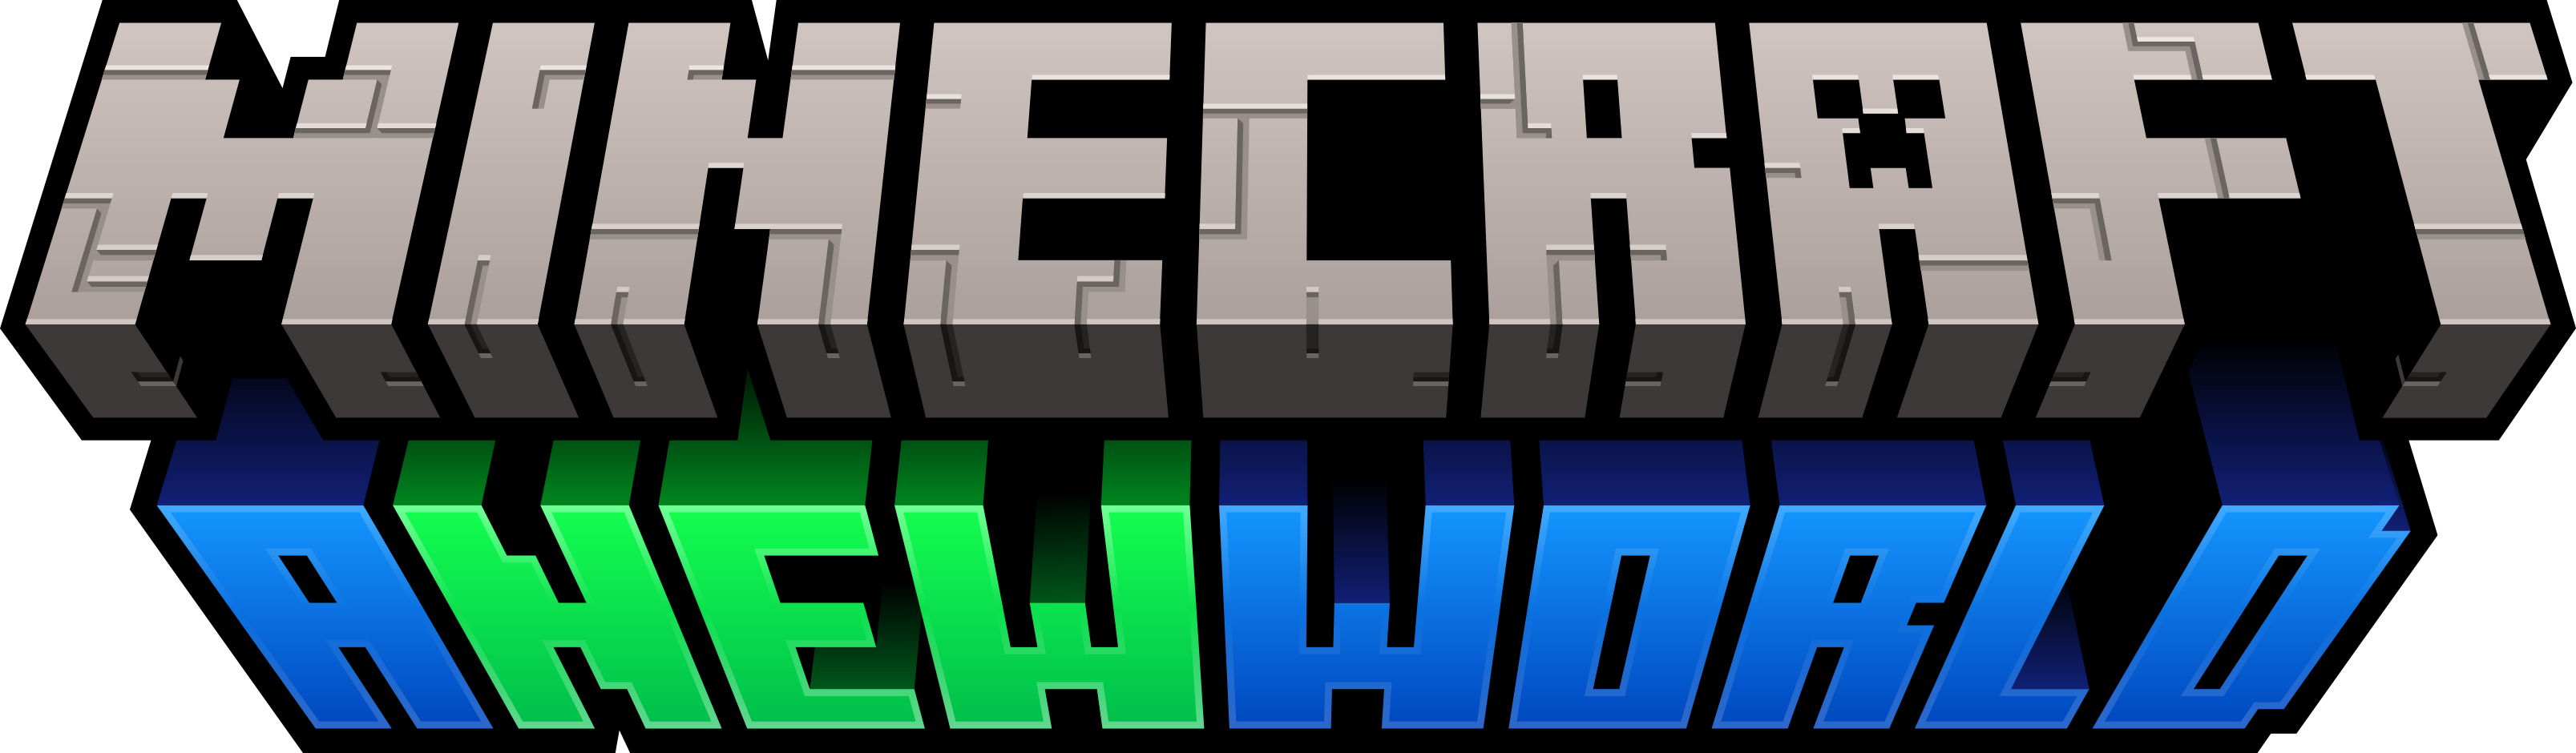 OneBlock Original (1.20 UPDATE IS LIVE) - Minecraft Worlds